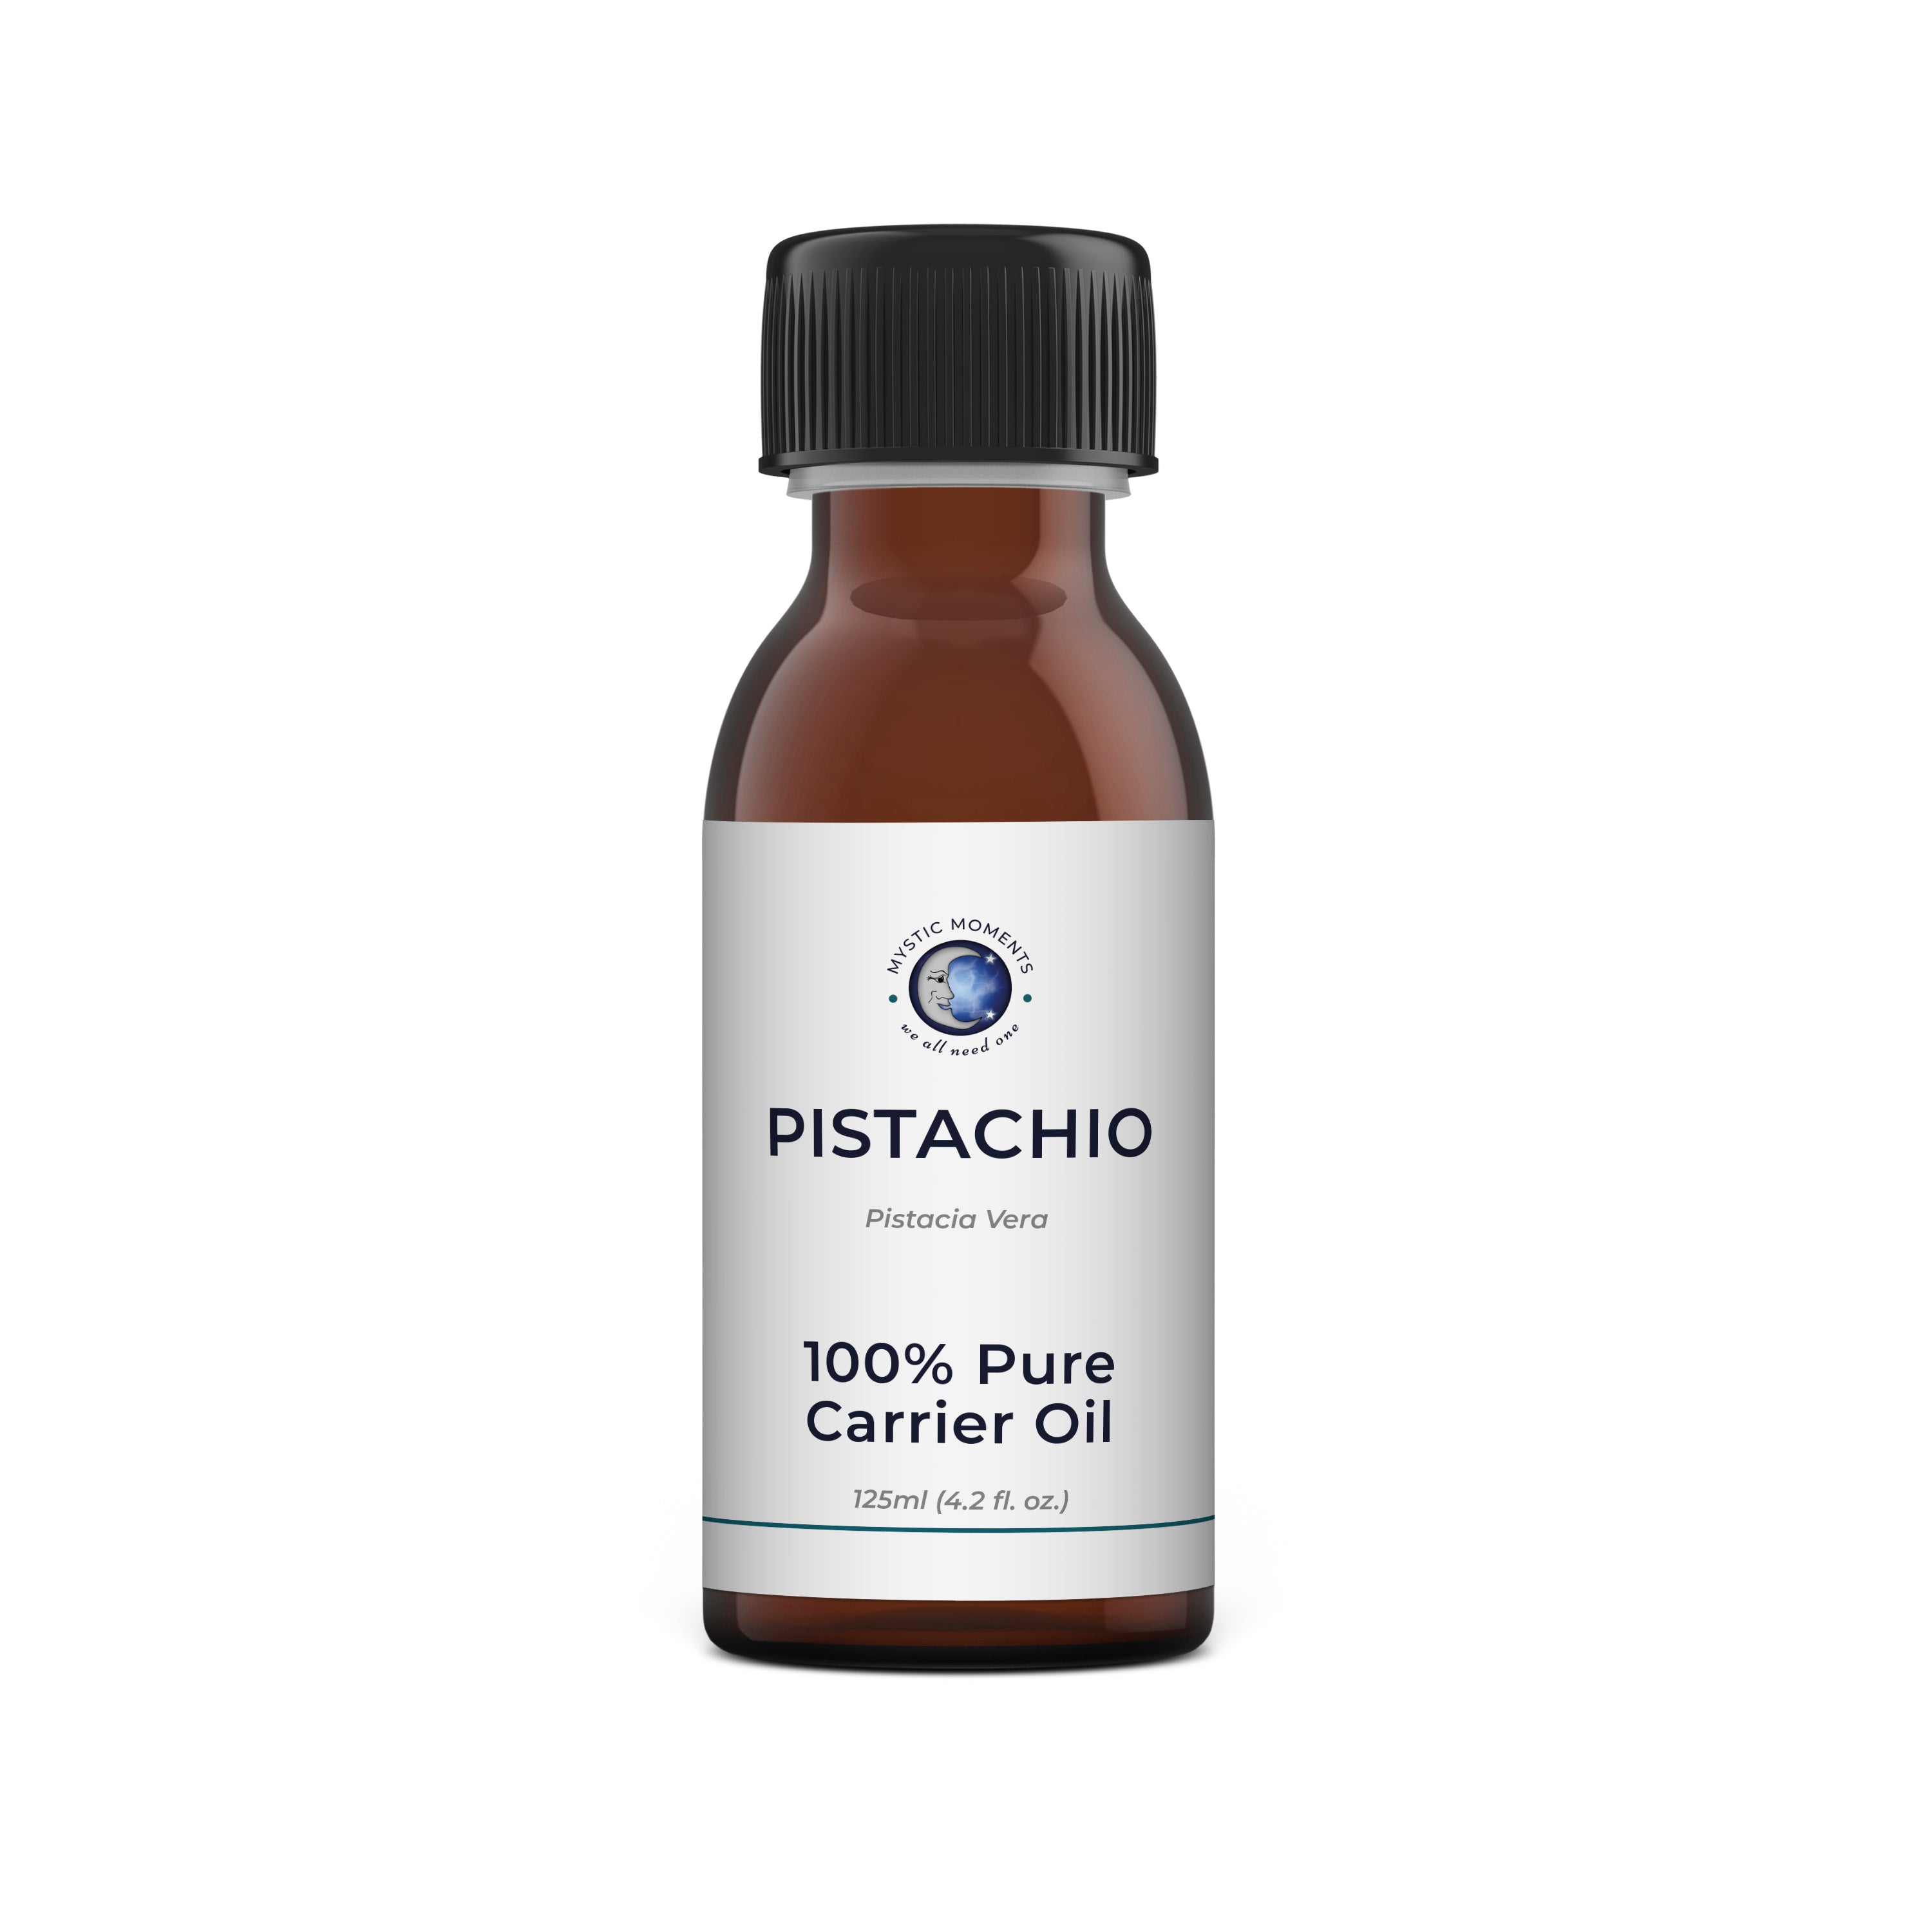 Pistachio Carrier Oil